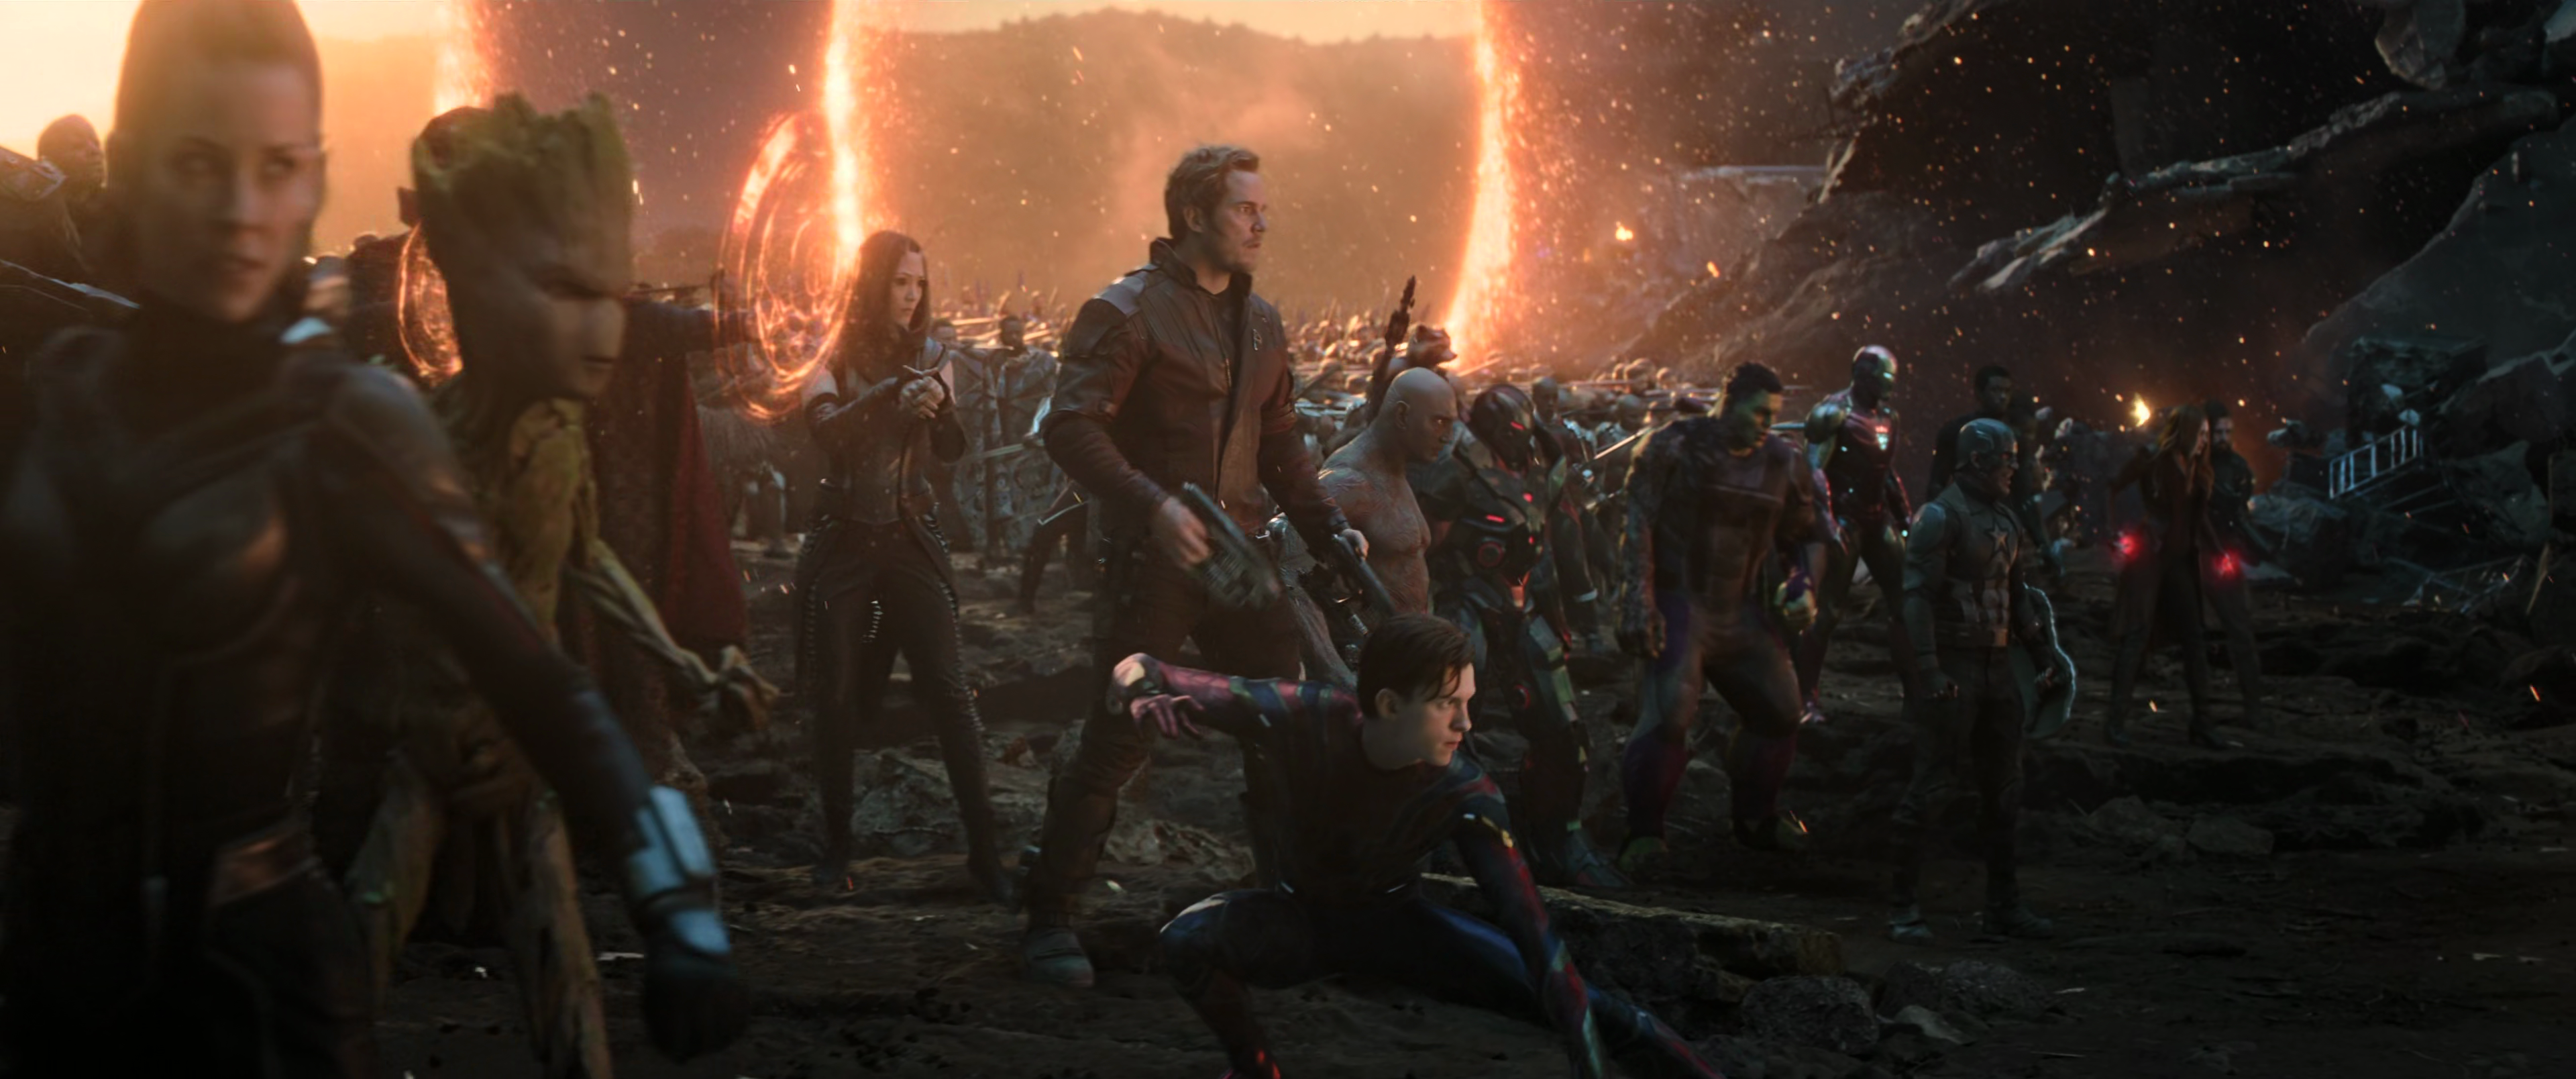 The Avengers assemble in Avengers: Endgame (2019), Marvel Entertainment via Blu-ray